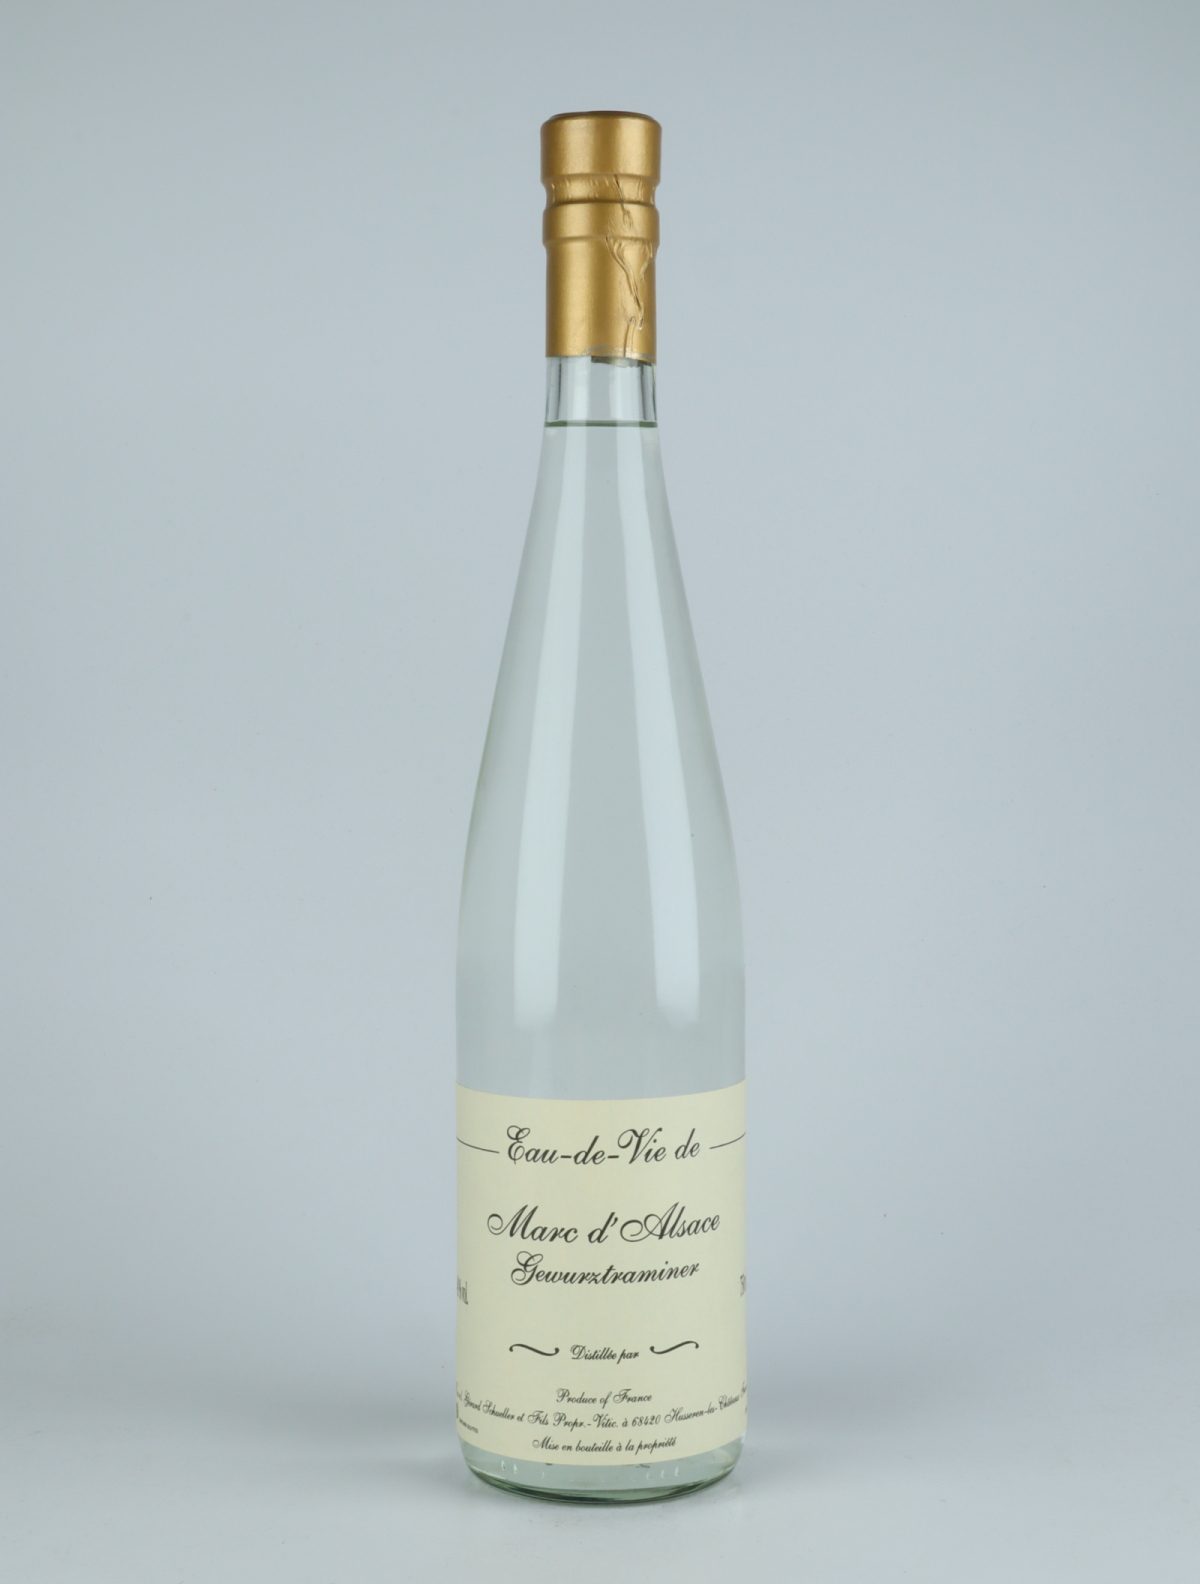 A bottle N.V. Eau de Vie de Marc de Gewürztraminer Spirits from Gérard Schueller, Alsace in France